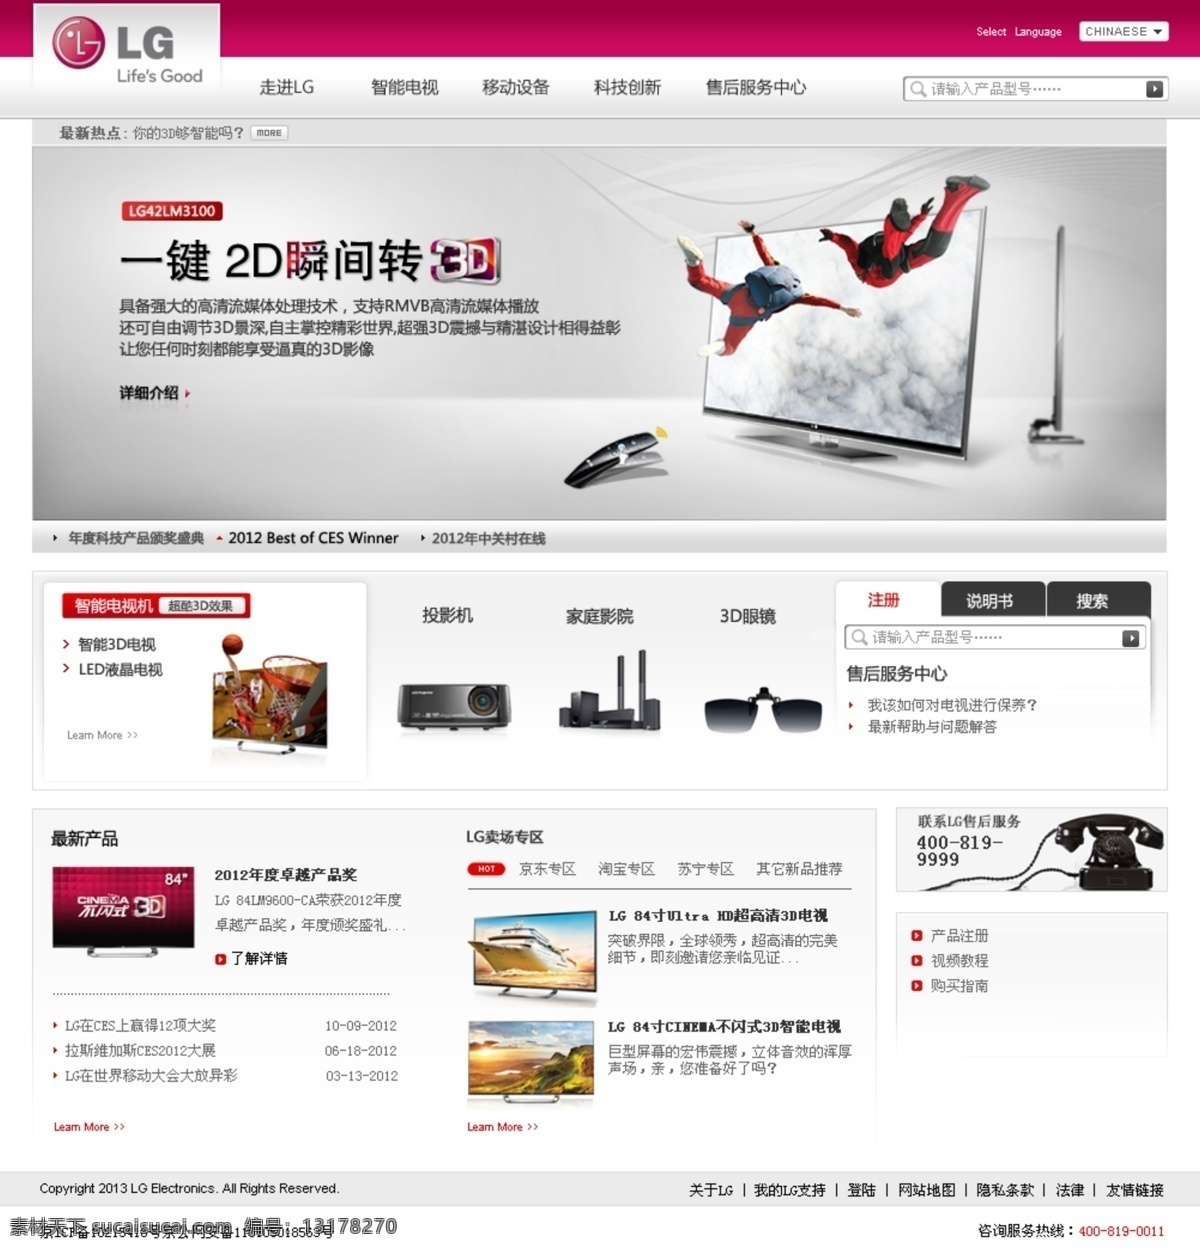 电视机 设计素材 网页模板 源文件 中文模板 lg 模板下载 lg电视机 网页素材